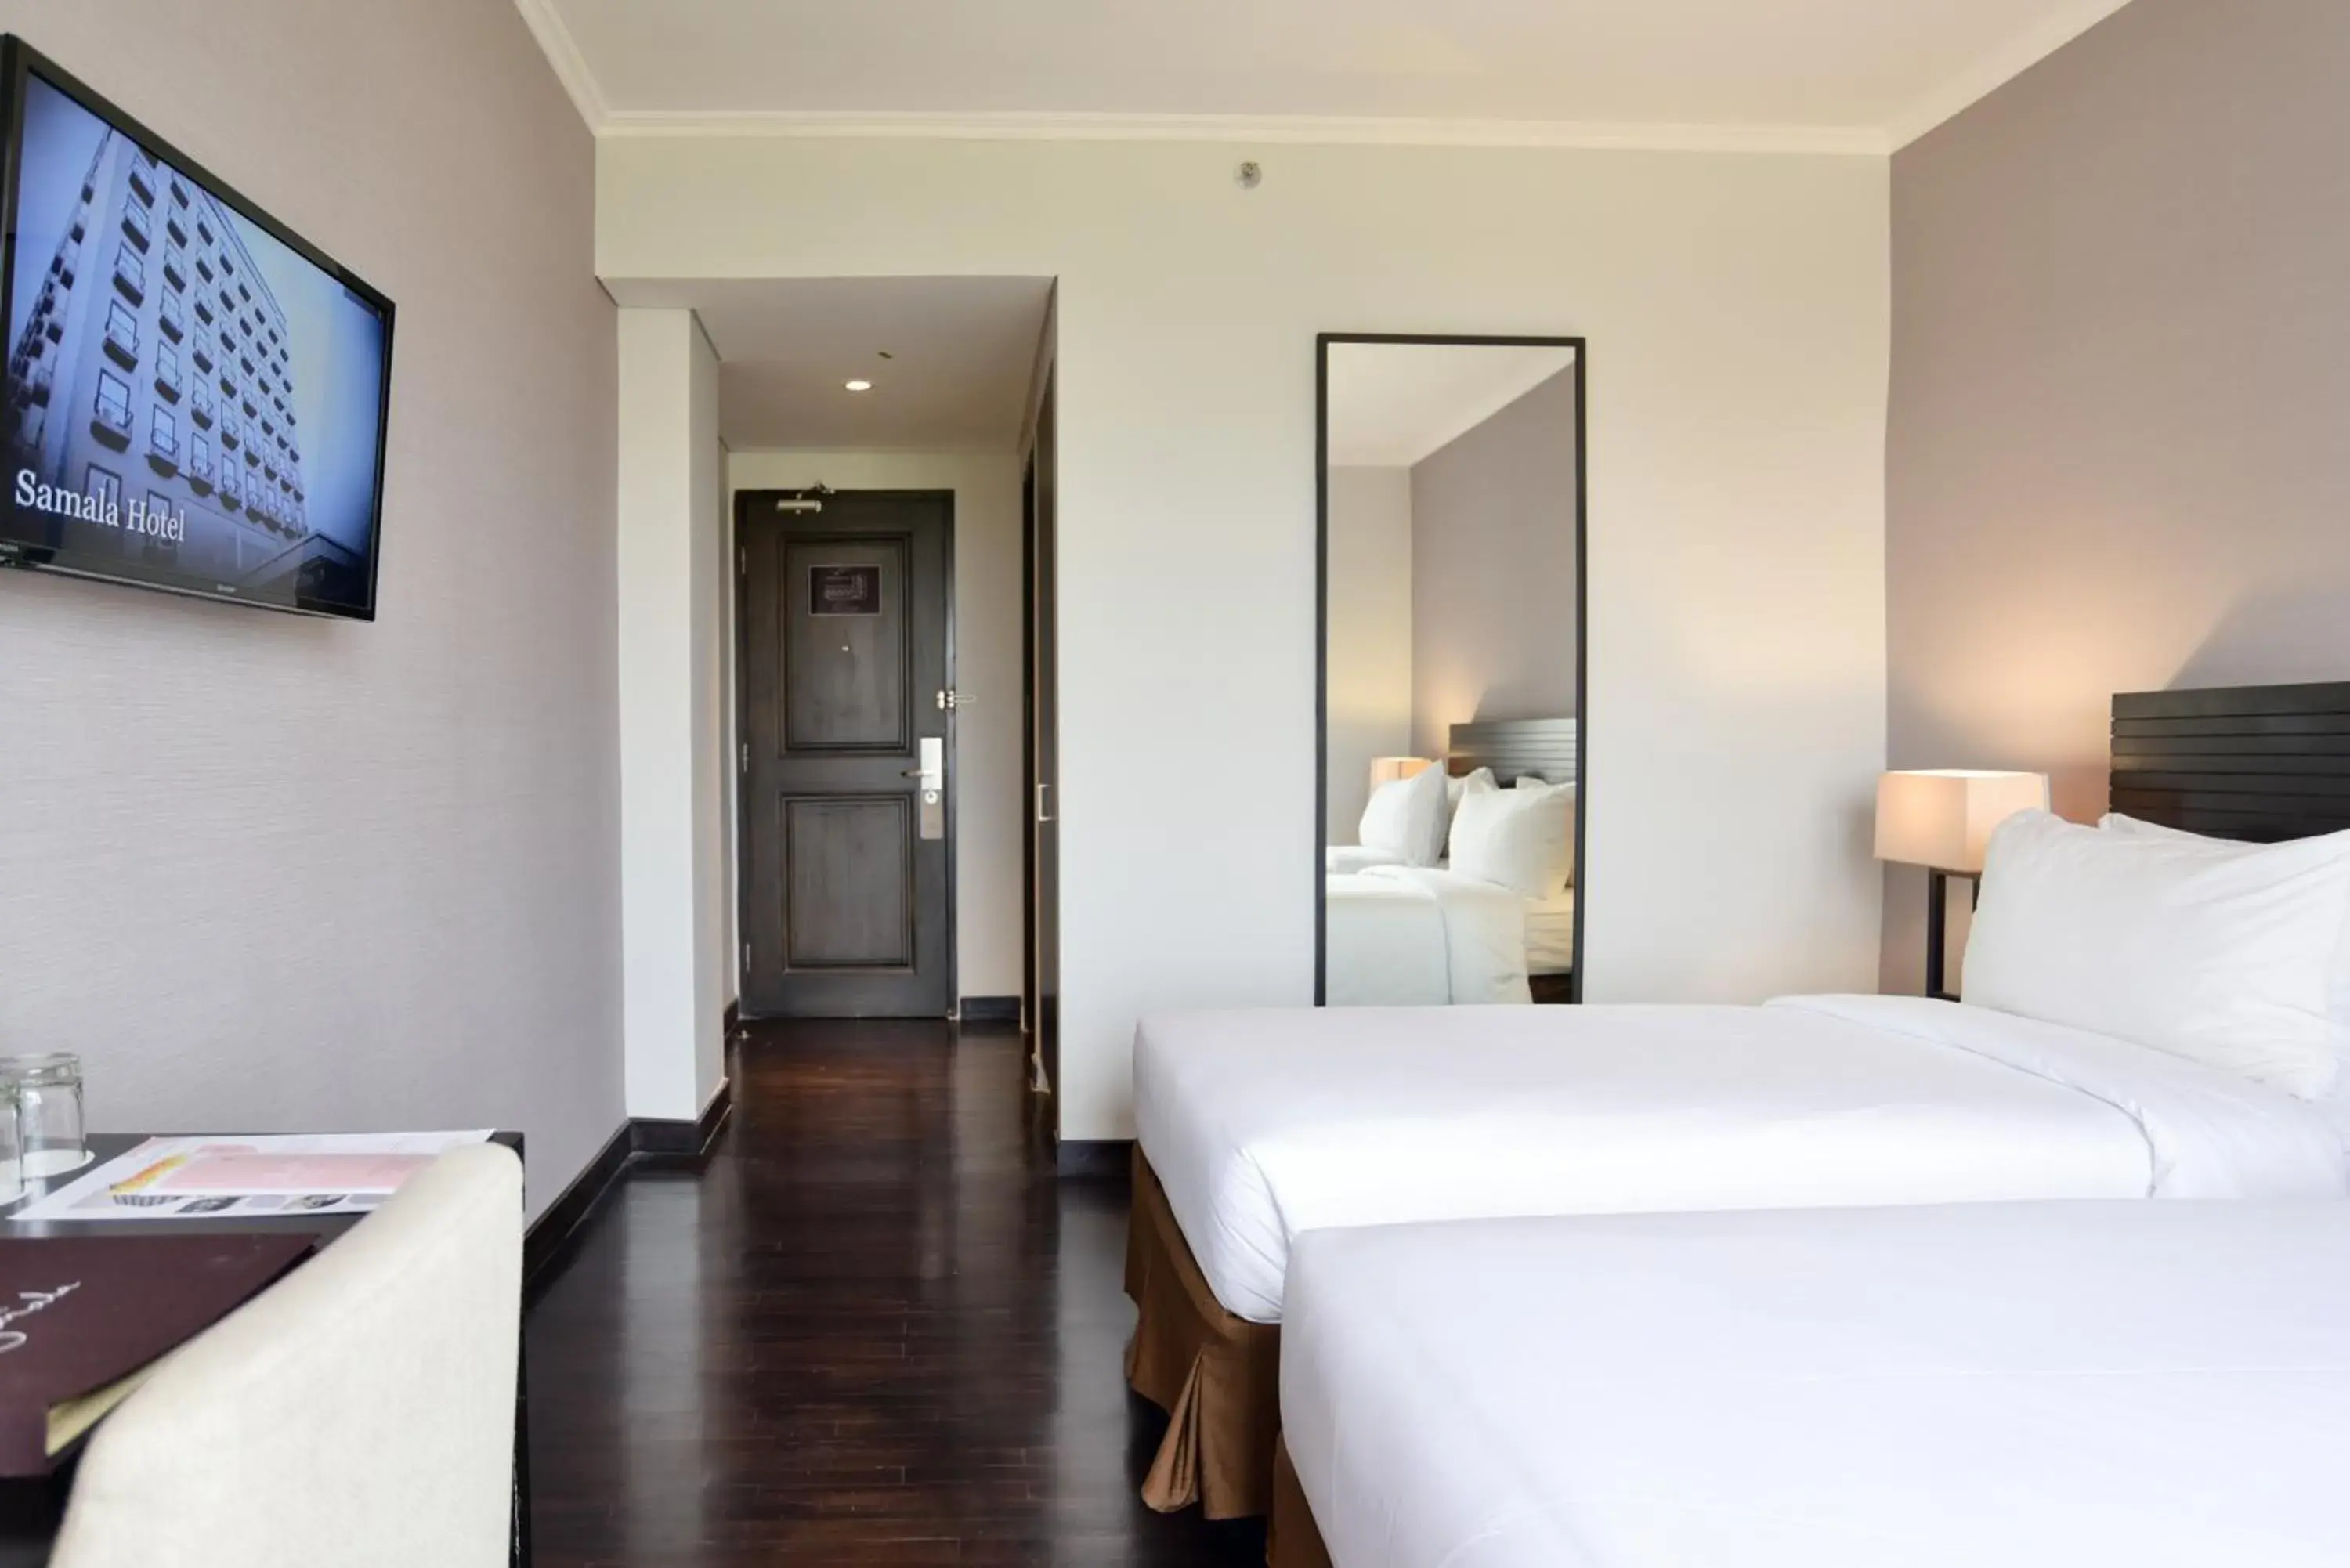 Bedroom in Samala Hotel Jakarta Cengkareng